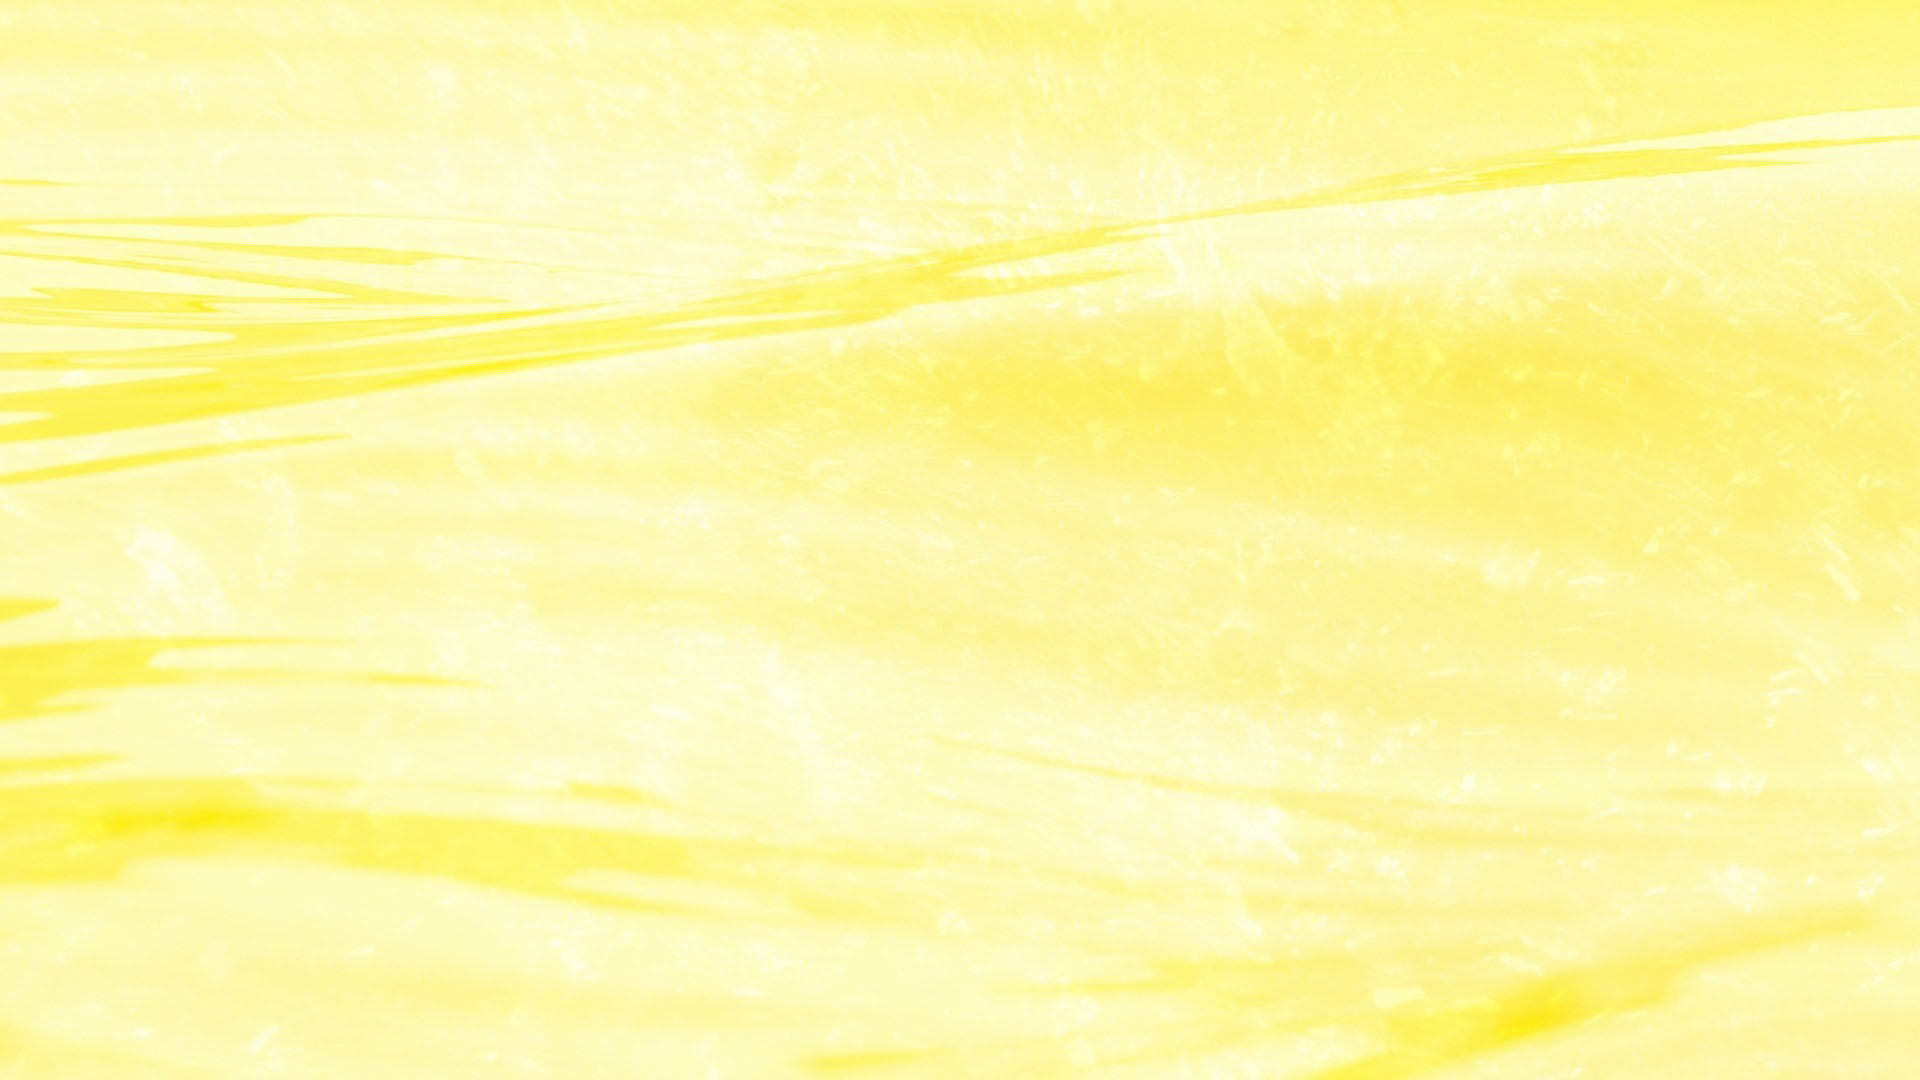 hình ảnh  Khối màu vàng màu xanh lá Hình nền máy tính phông chữ vật  chất góc Đối xứng Đồ họa 5760x3240  asdresden  1418162  hình ảnh đẹp   PxHere